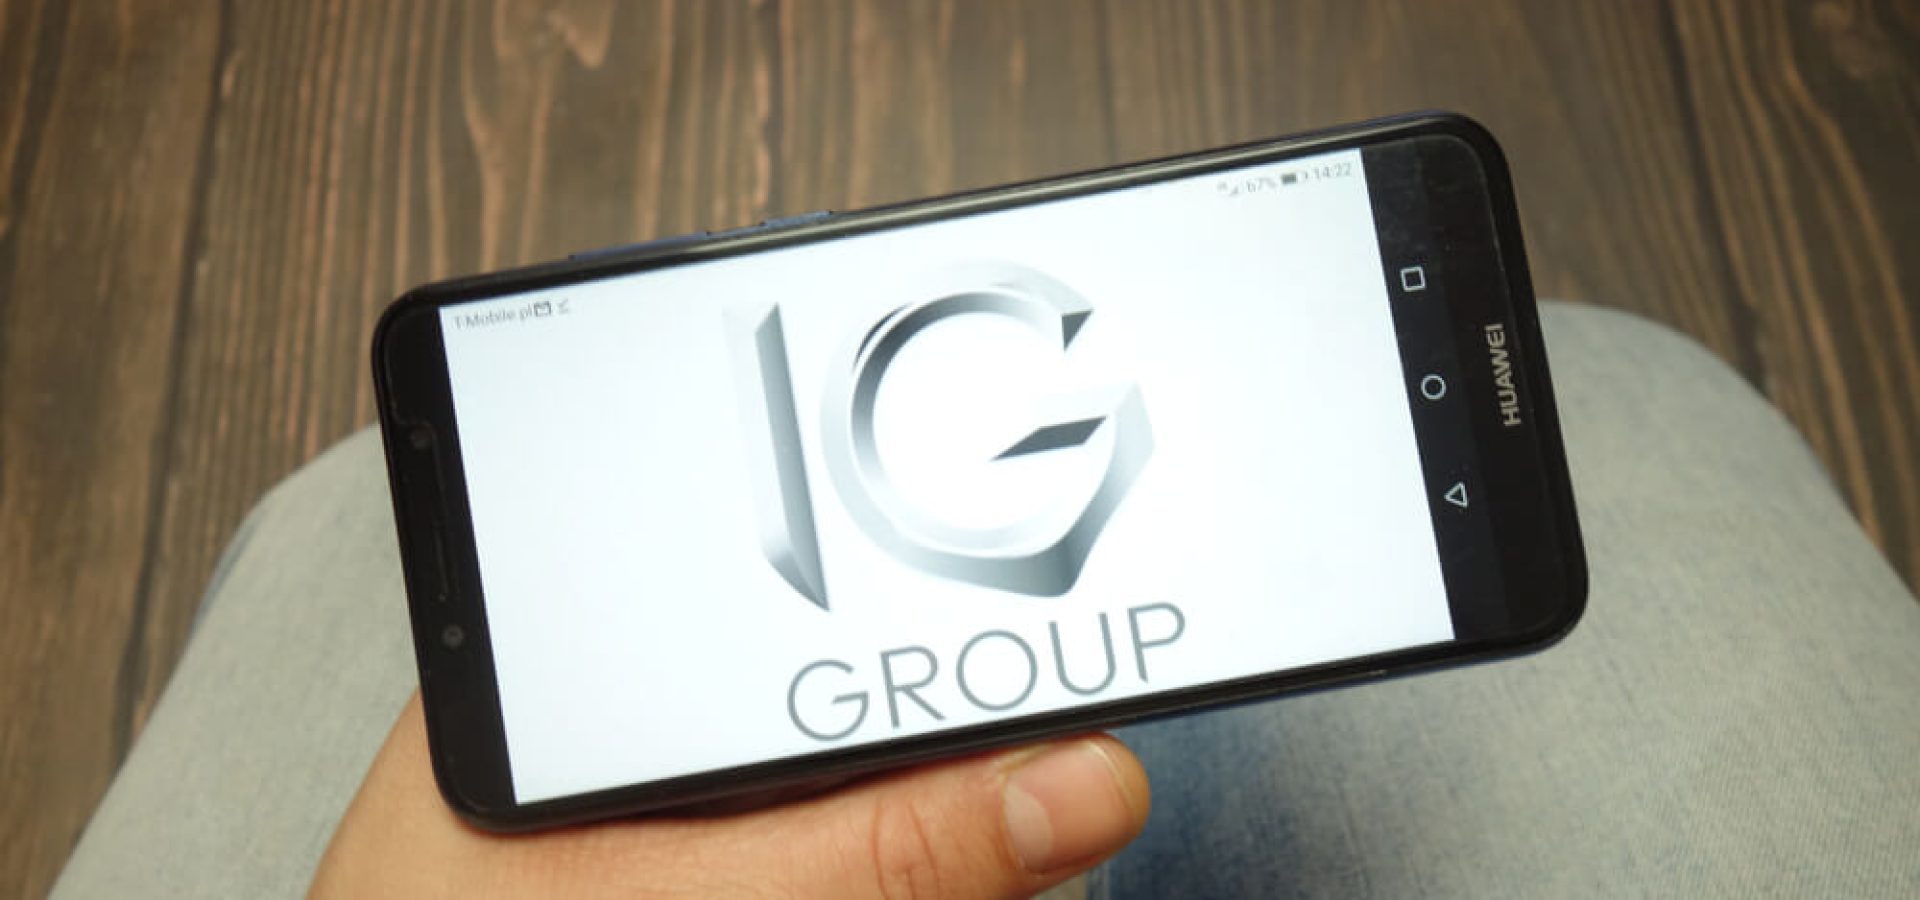 IG Group company logo displayed on Huawei smartphone.